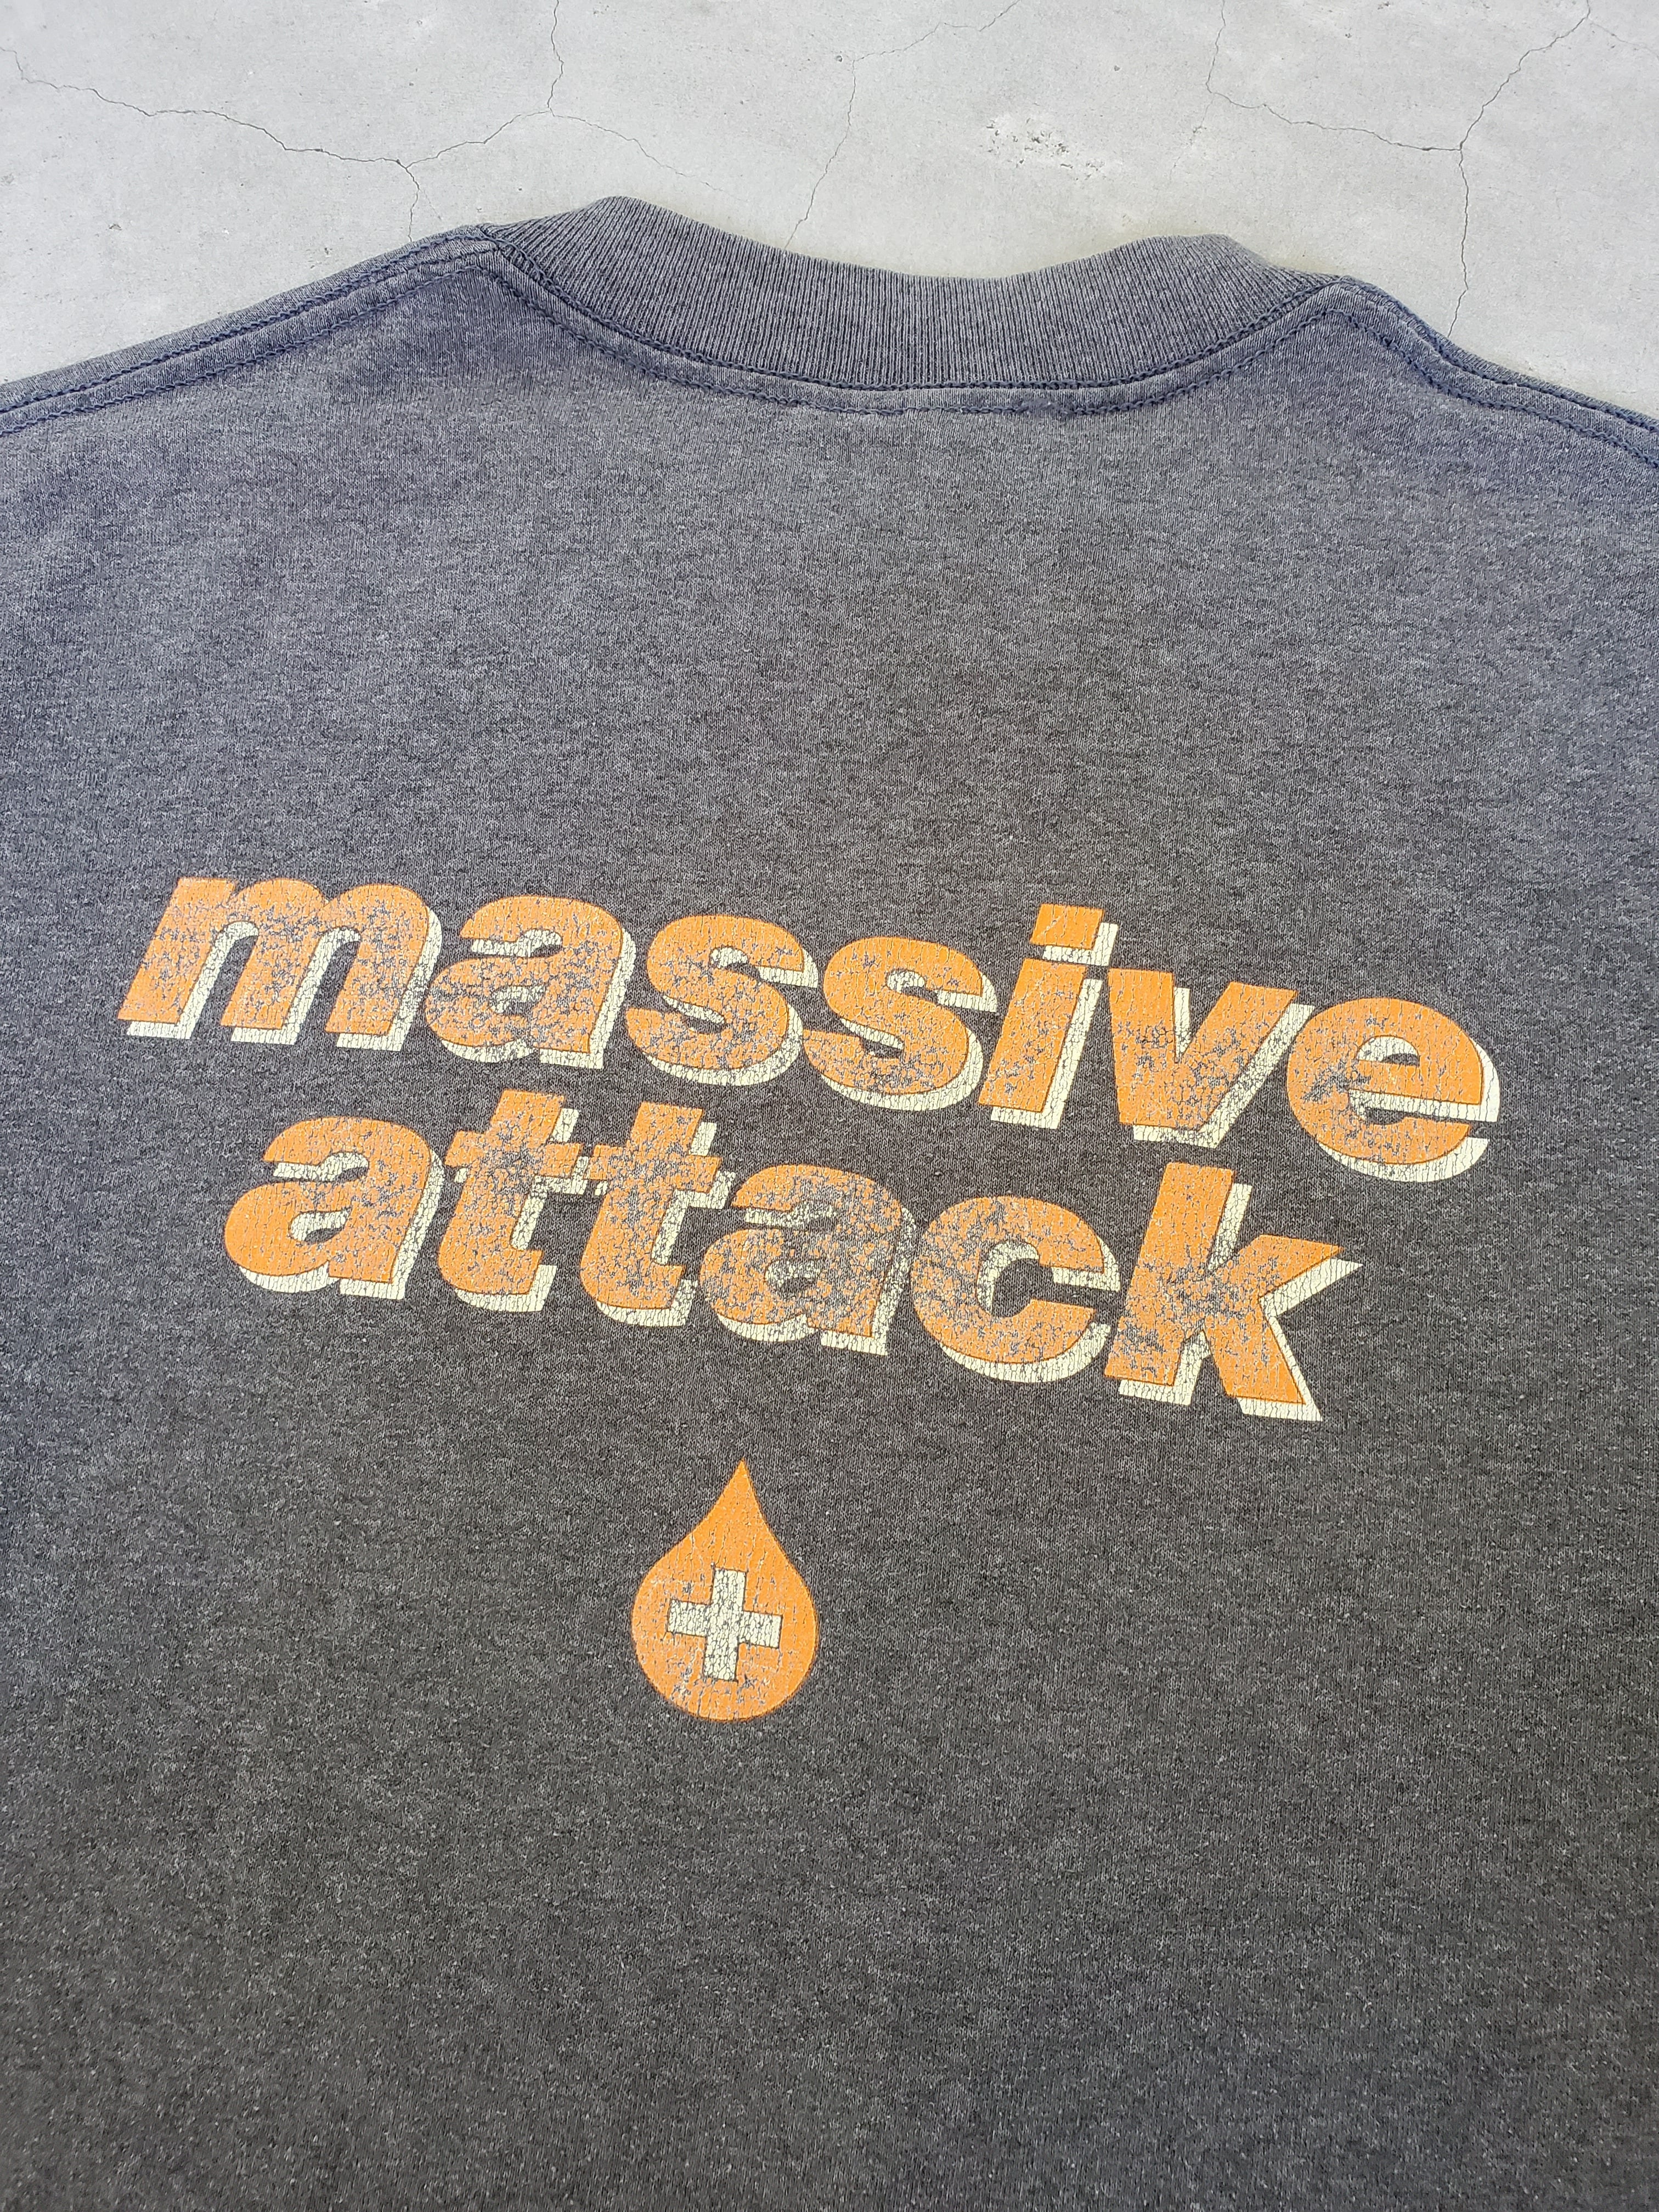 90s Massive Attack Tシャツ マッシブアタック バンドT